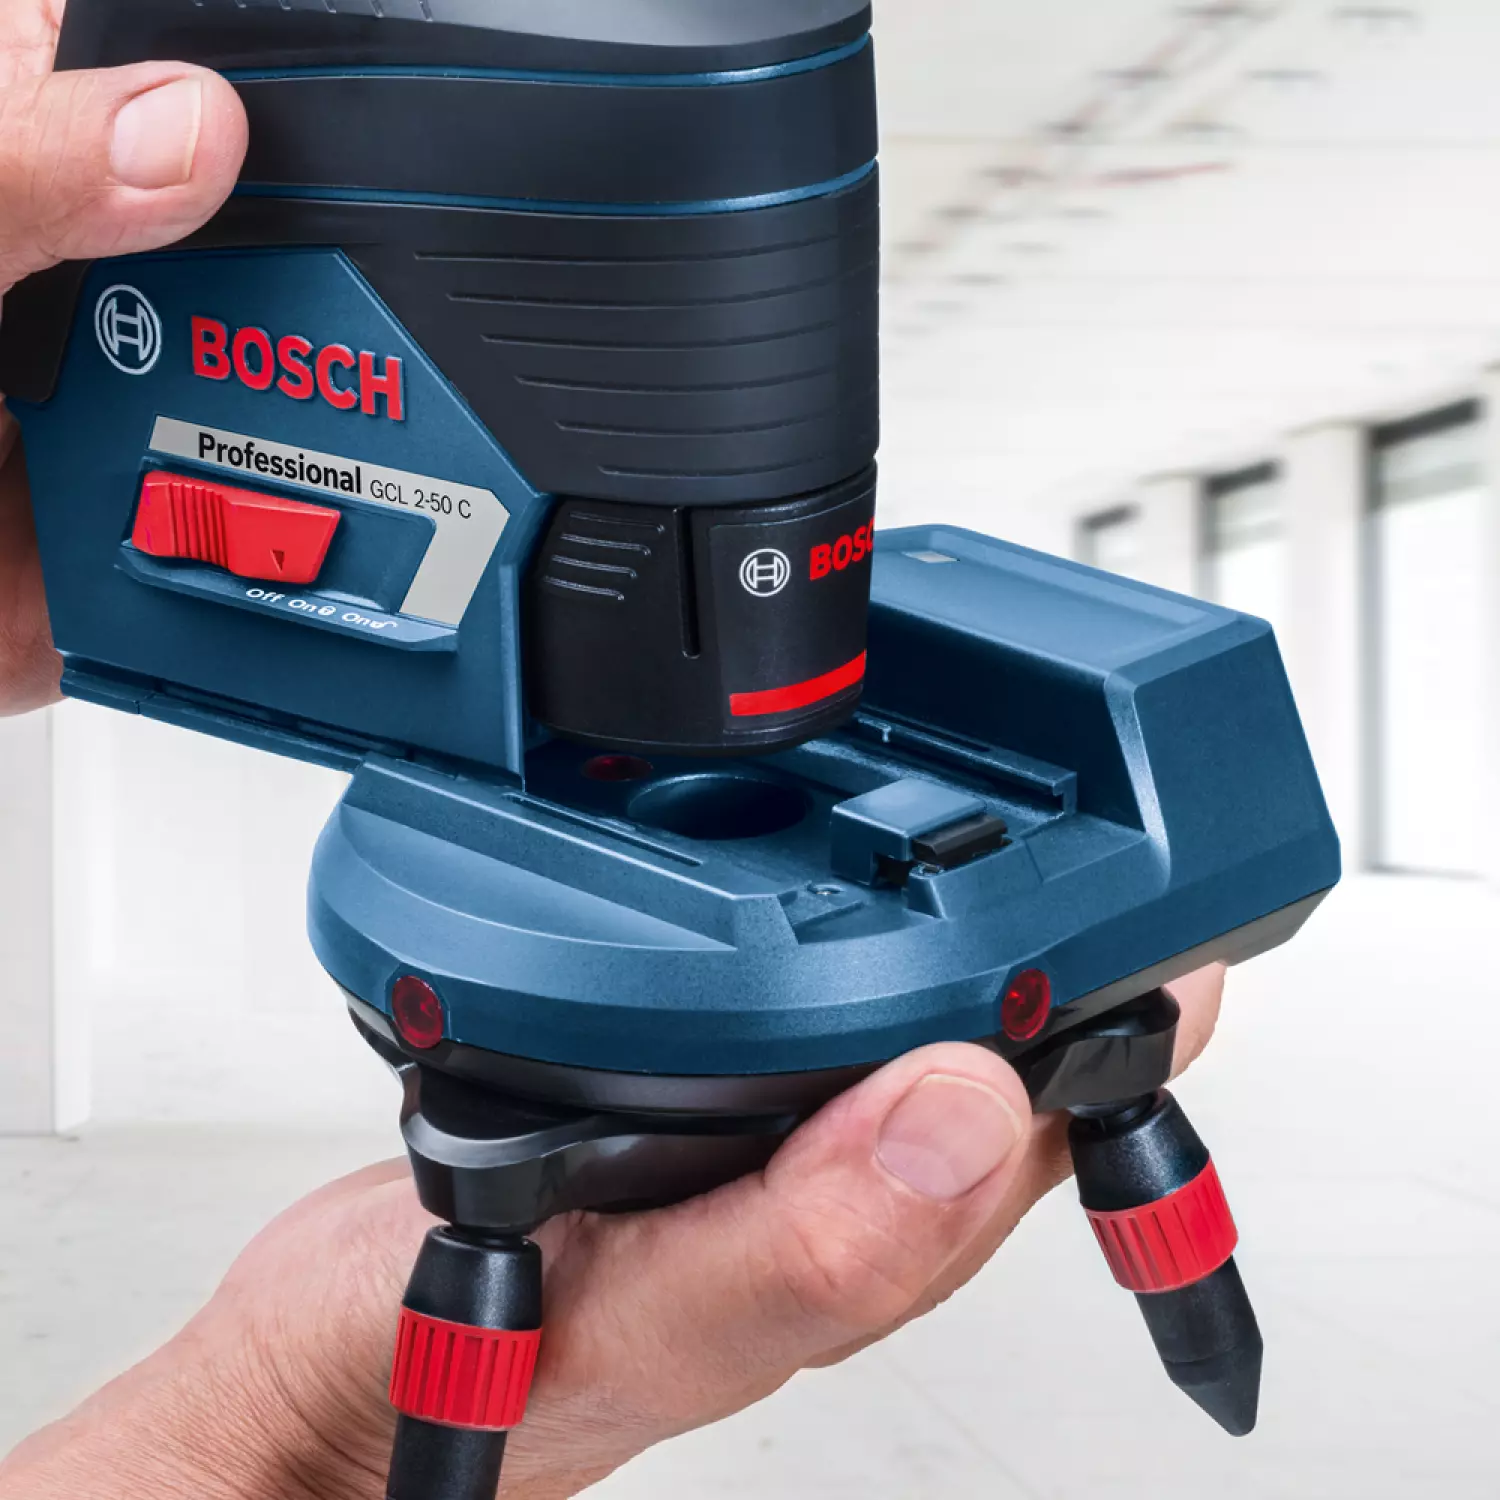 Bosch RM3 Houder Laser - 120 x 135mm + RC 2 Afstandsbediening